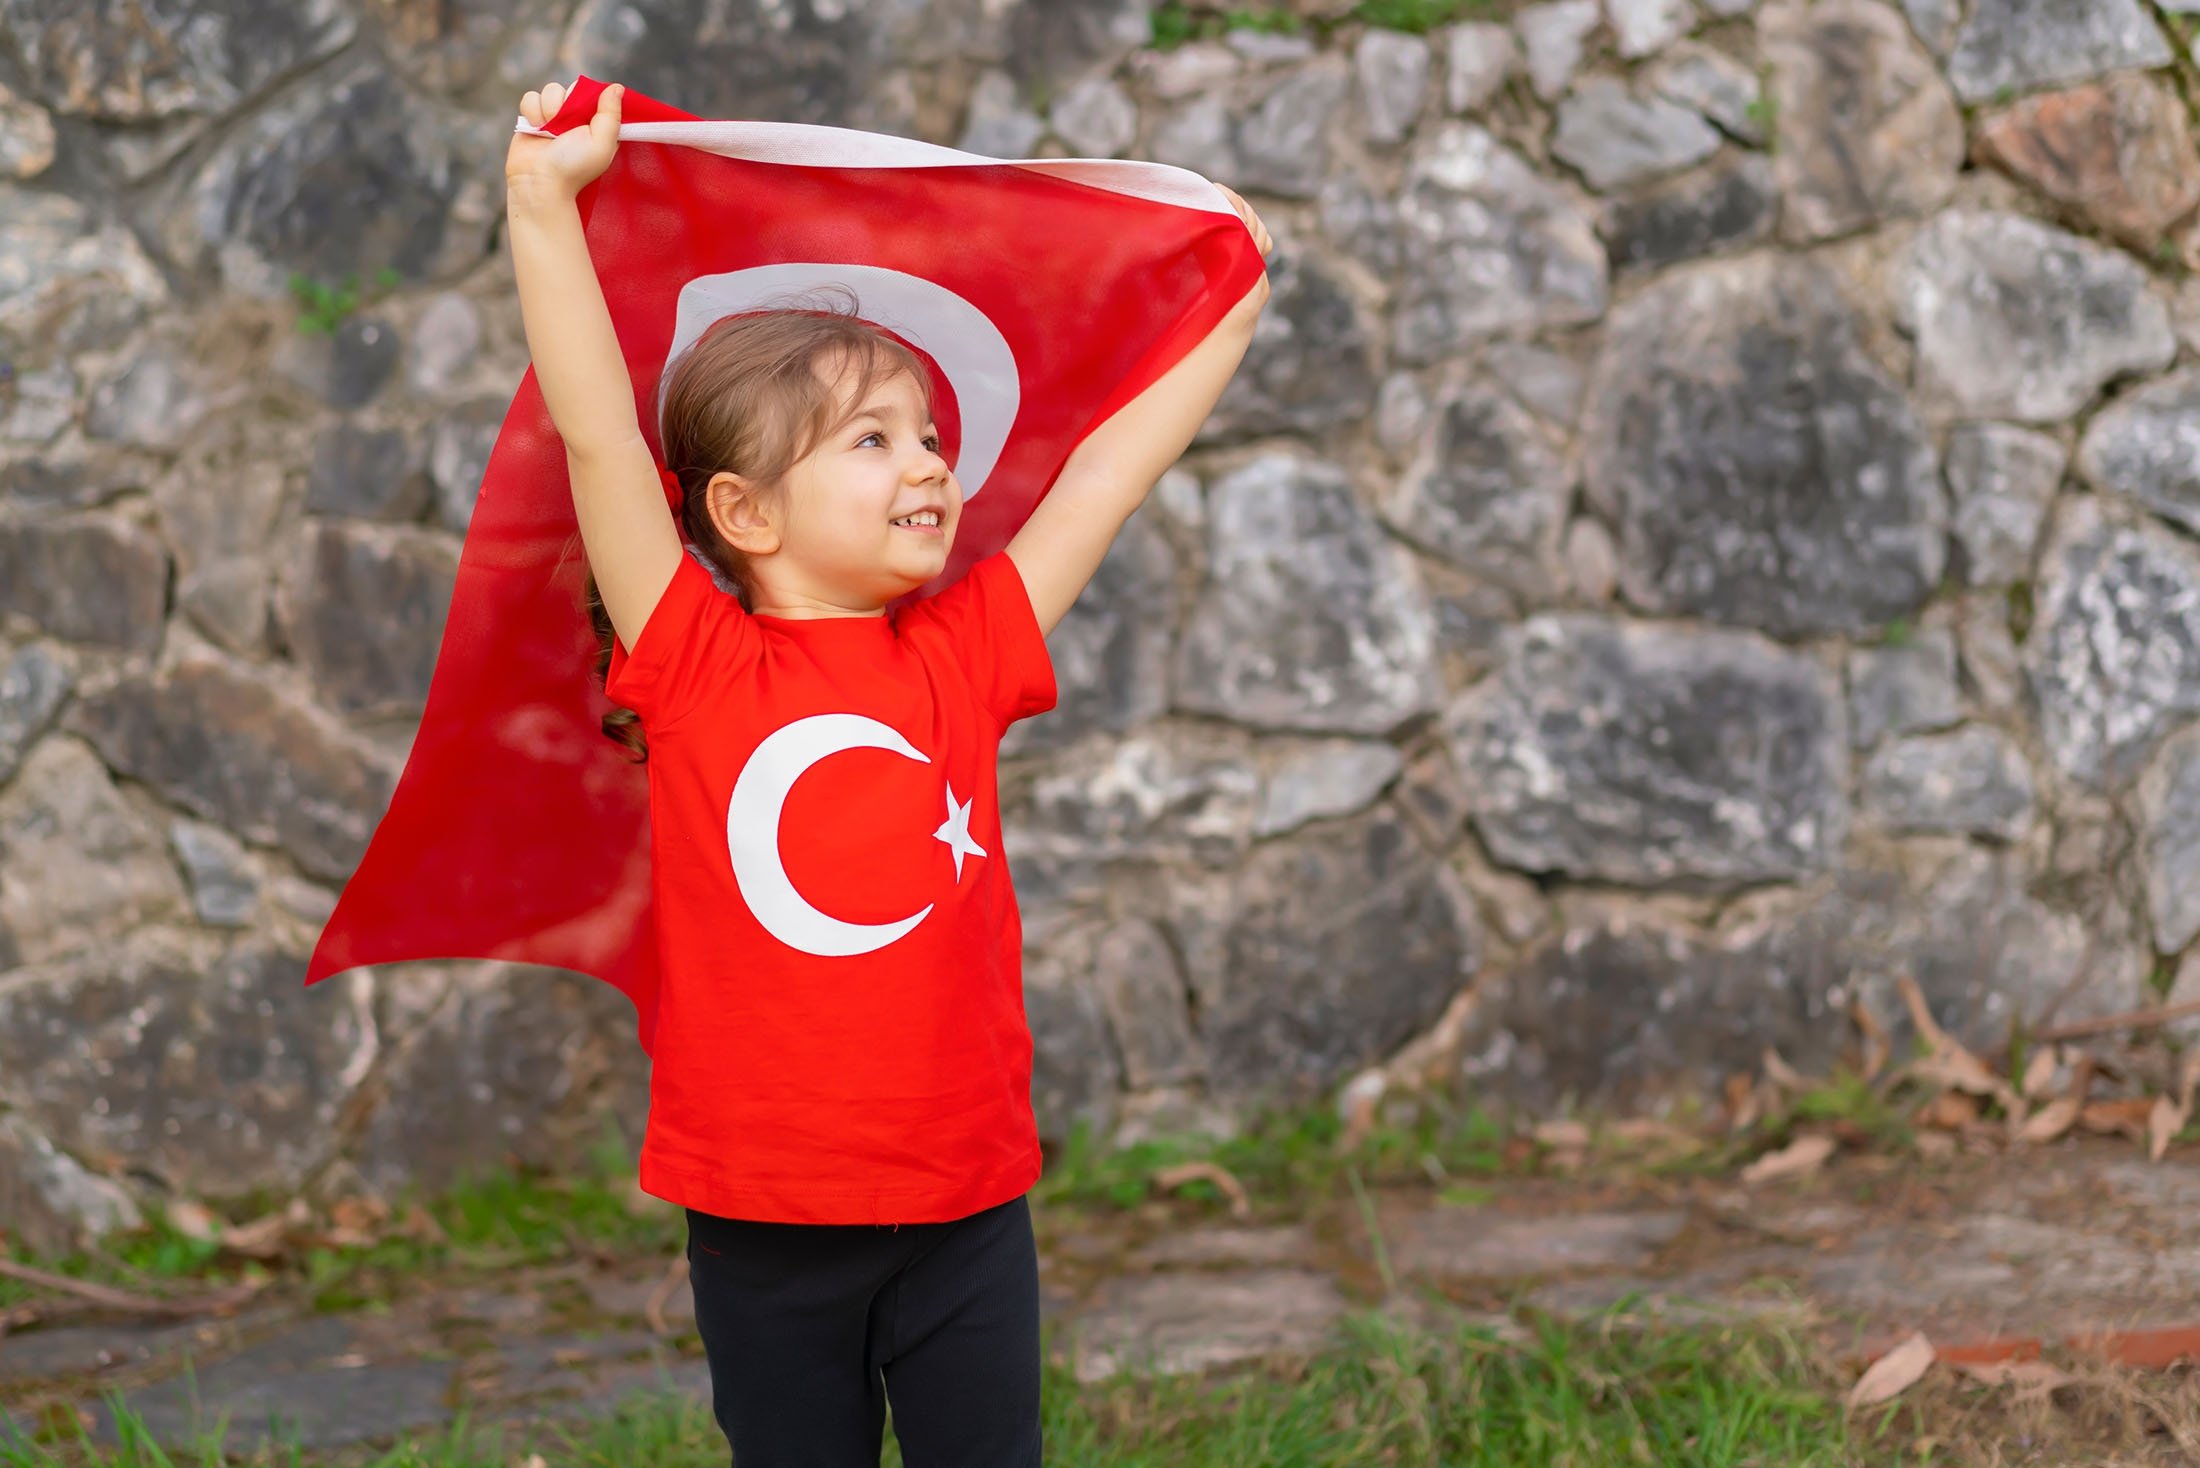 La Journée de la souveraineté nationale et des enfants est célébrée en Turquie le 23 avril. (Photo Shutterstock)